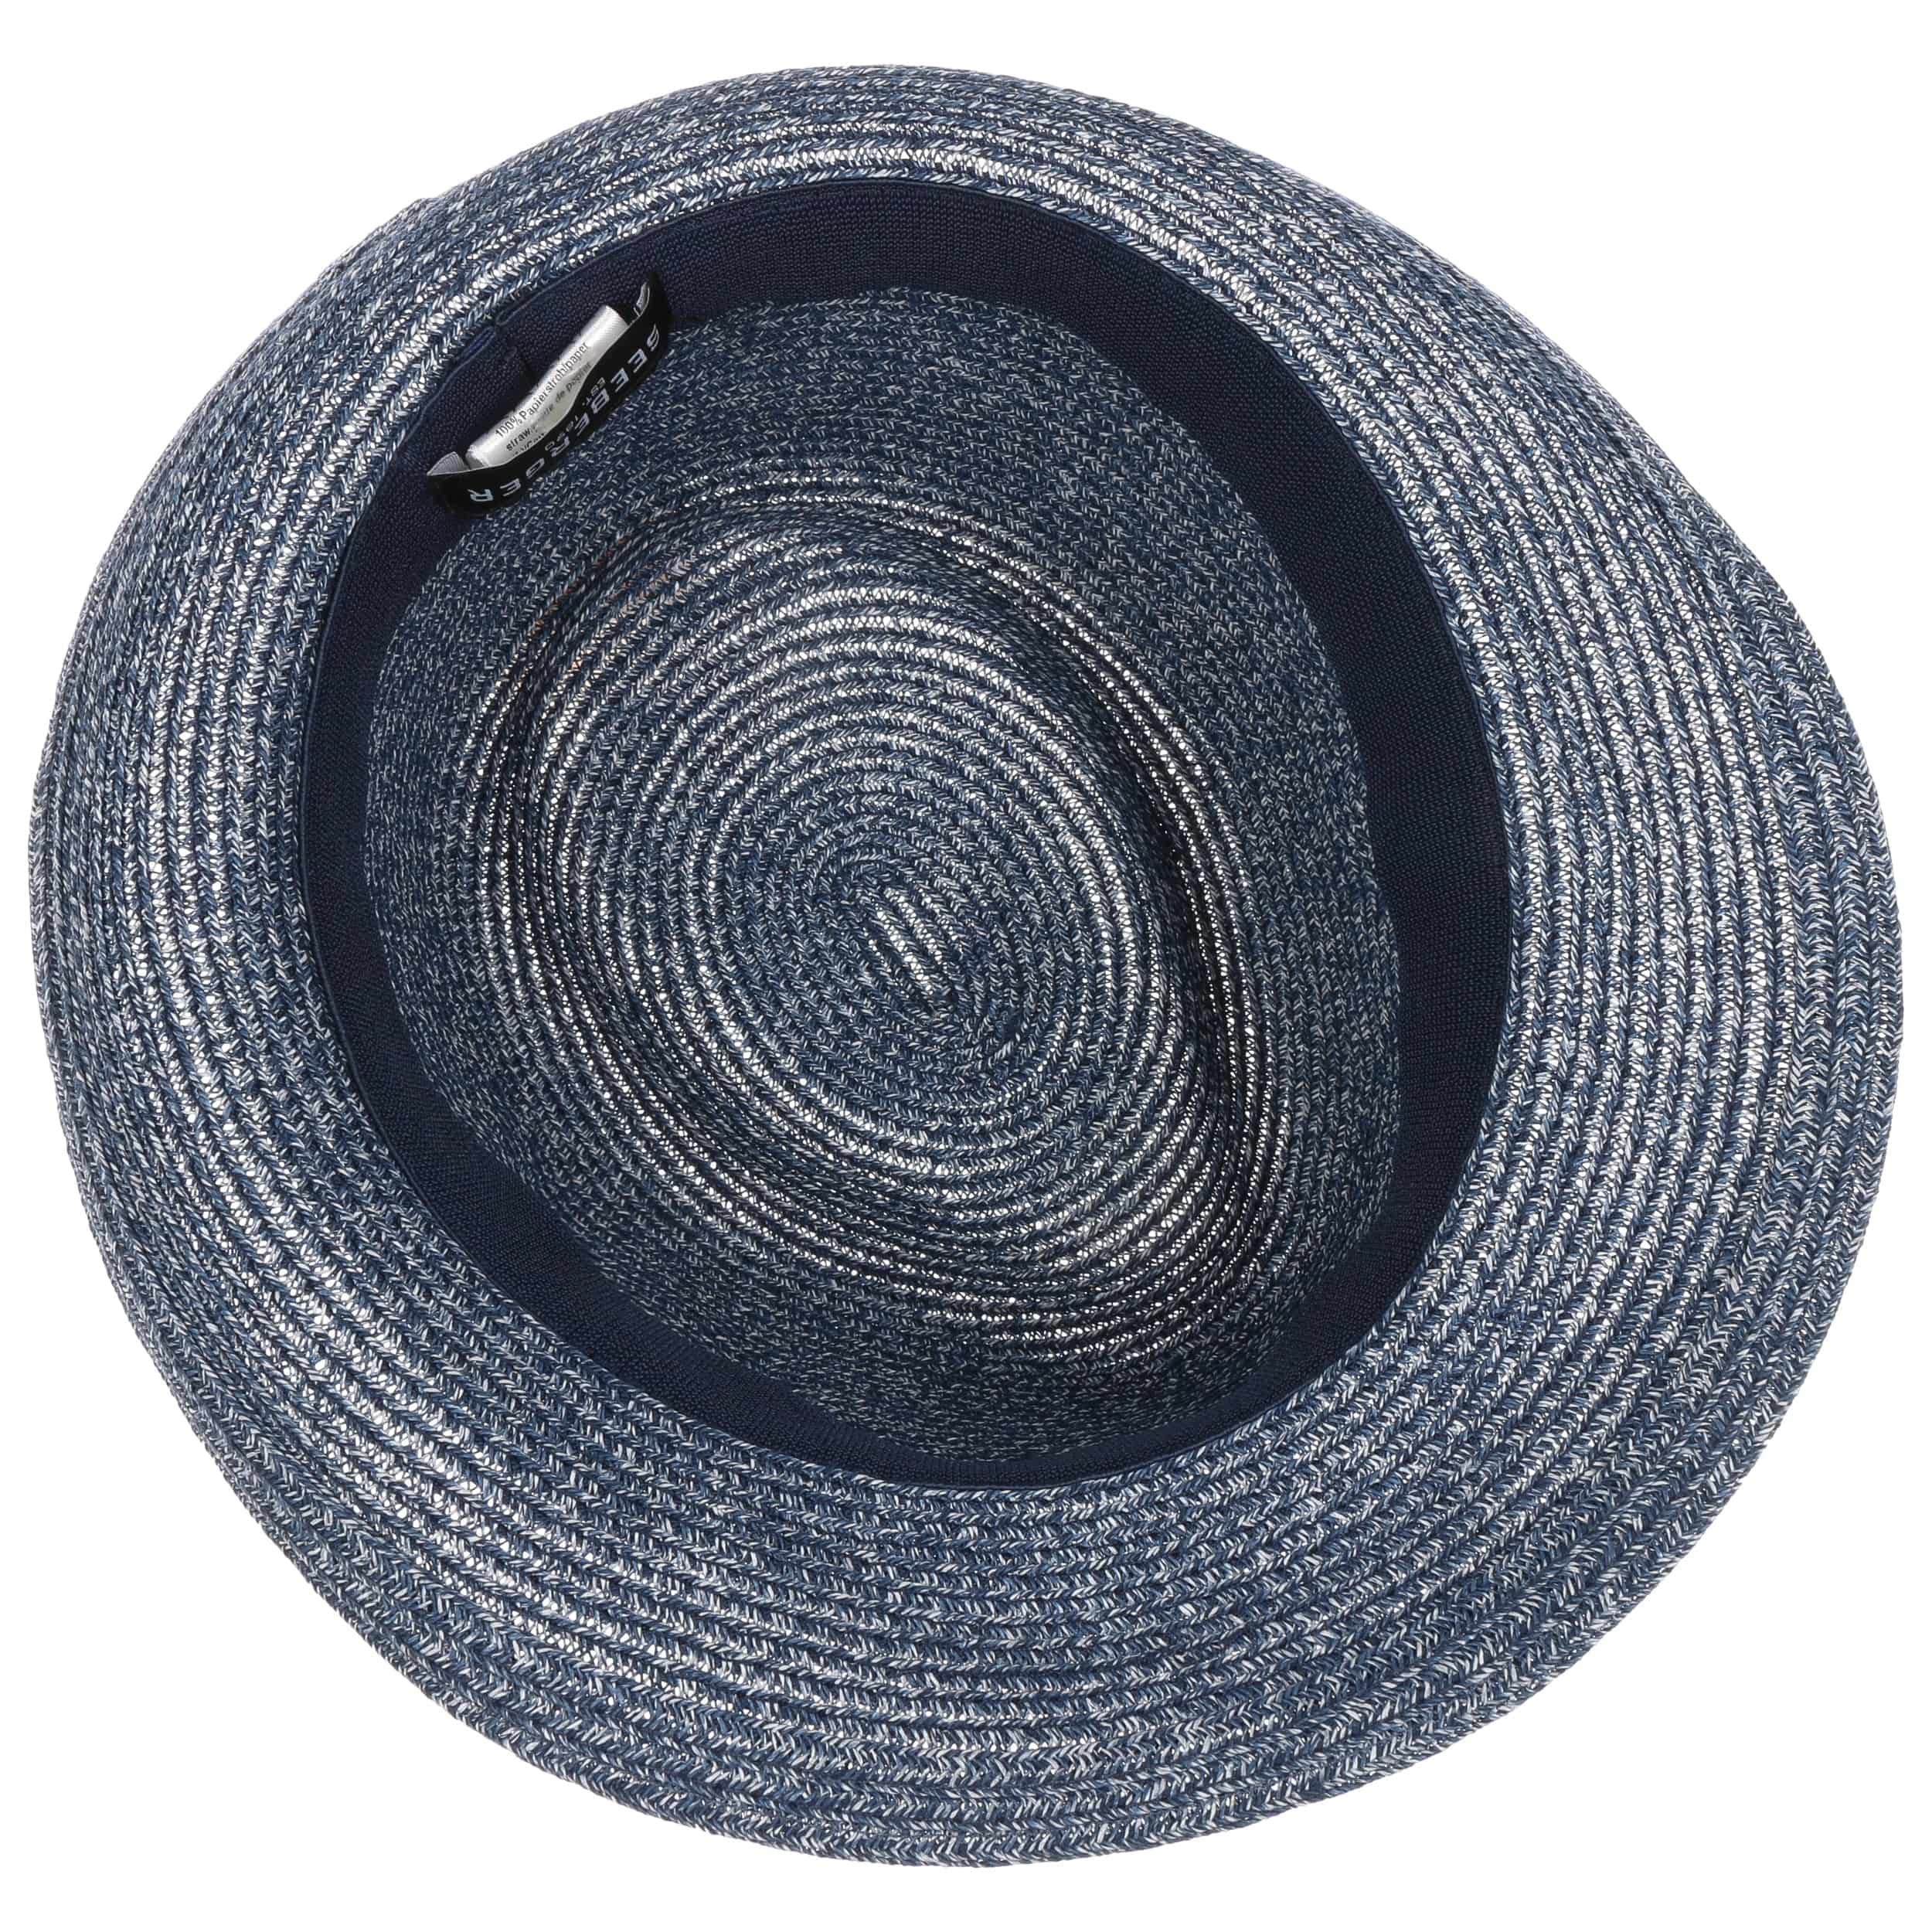 Sombrero de paja de verano para el sol agradable al tacto y cómodo con cinta de grogrén monocromática Trilby flexible muy ligero 